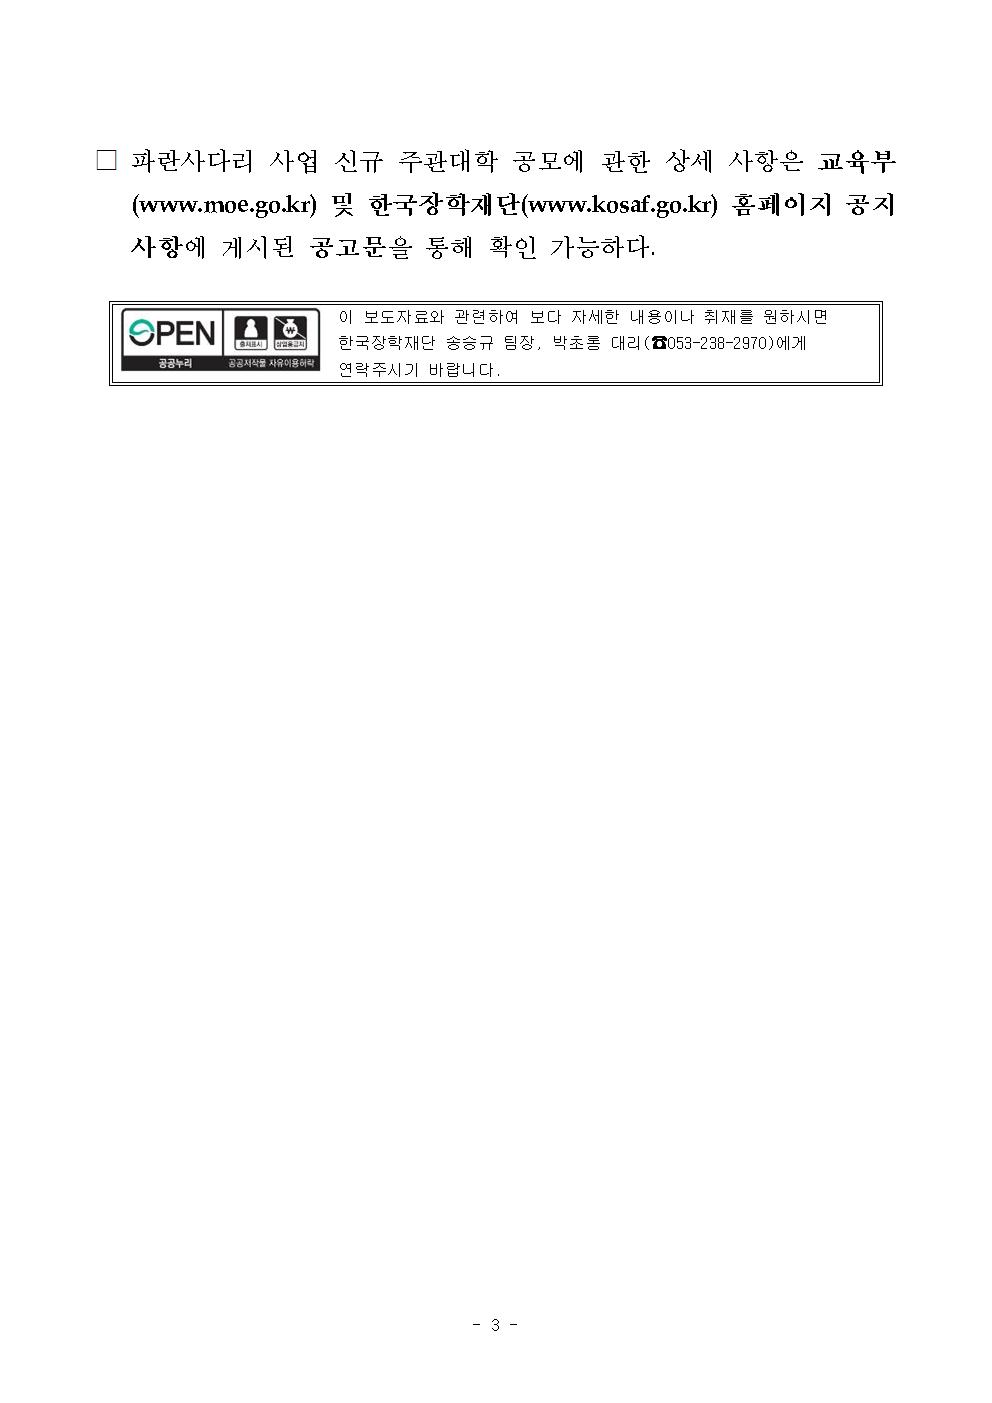 02-20(목)[보도자료] 2020년 「파란사다리」 사업 신규 주관대학 모집003.jpg